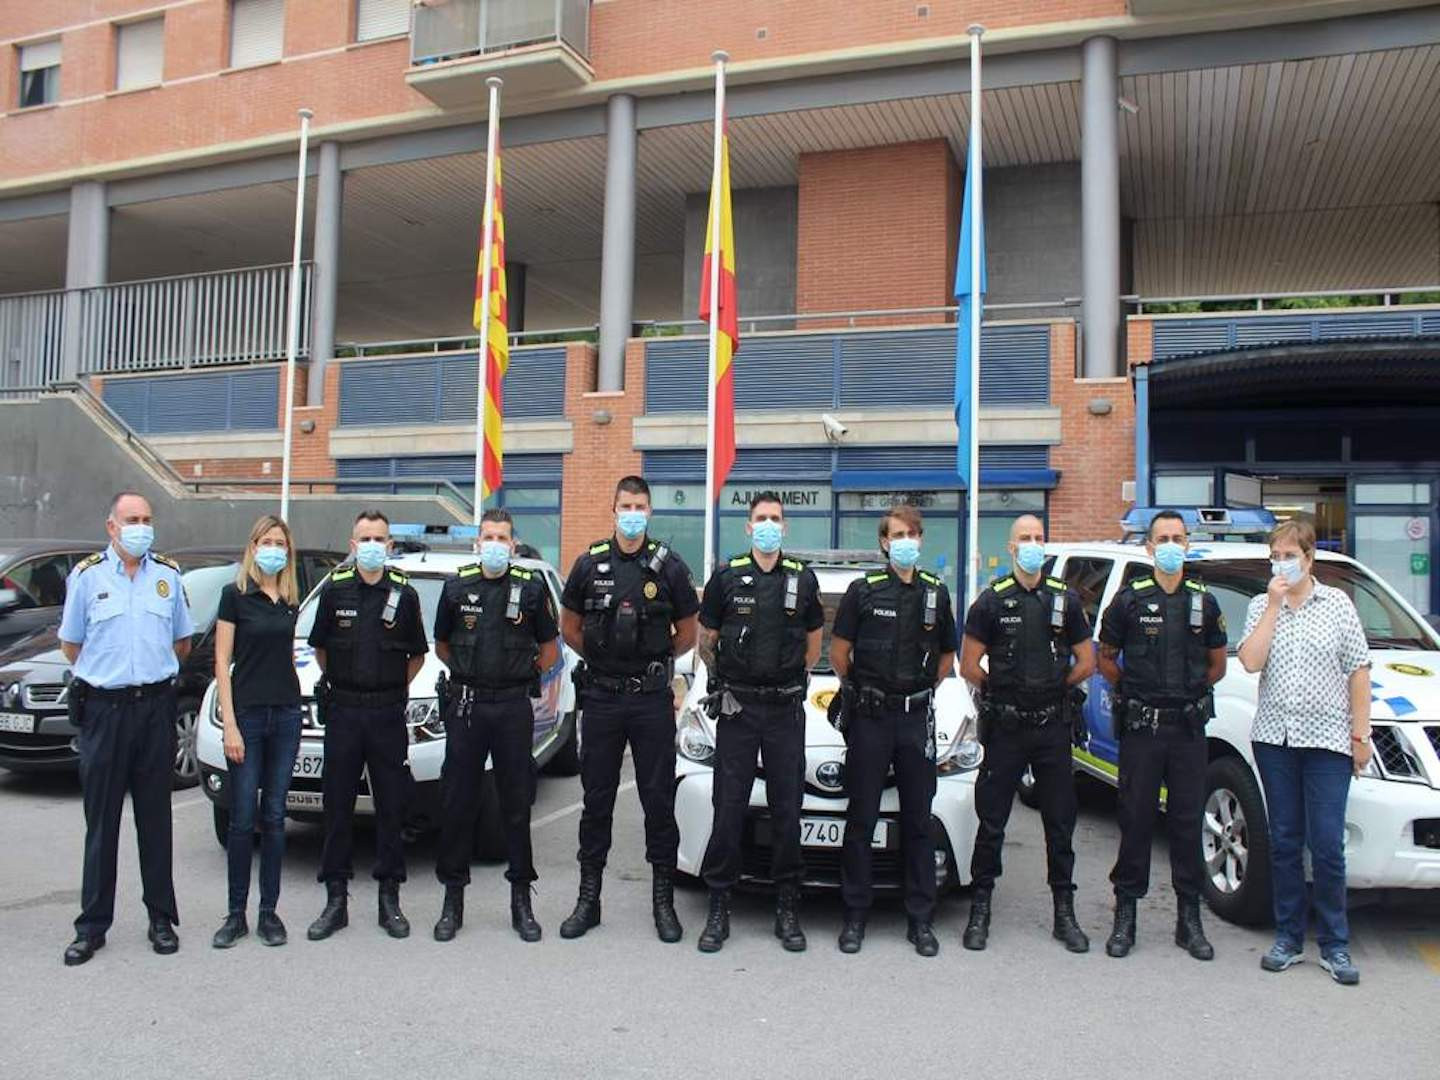 La unidad USIR de Santa Coloma con la alcaldesa y la regidora de seguridad / Ayuntamiento de Santa Coloma